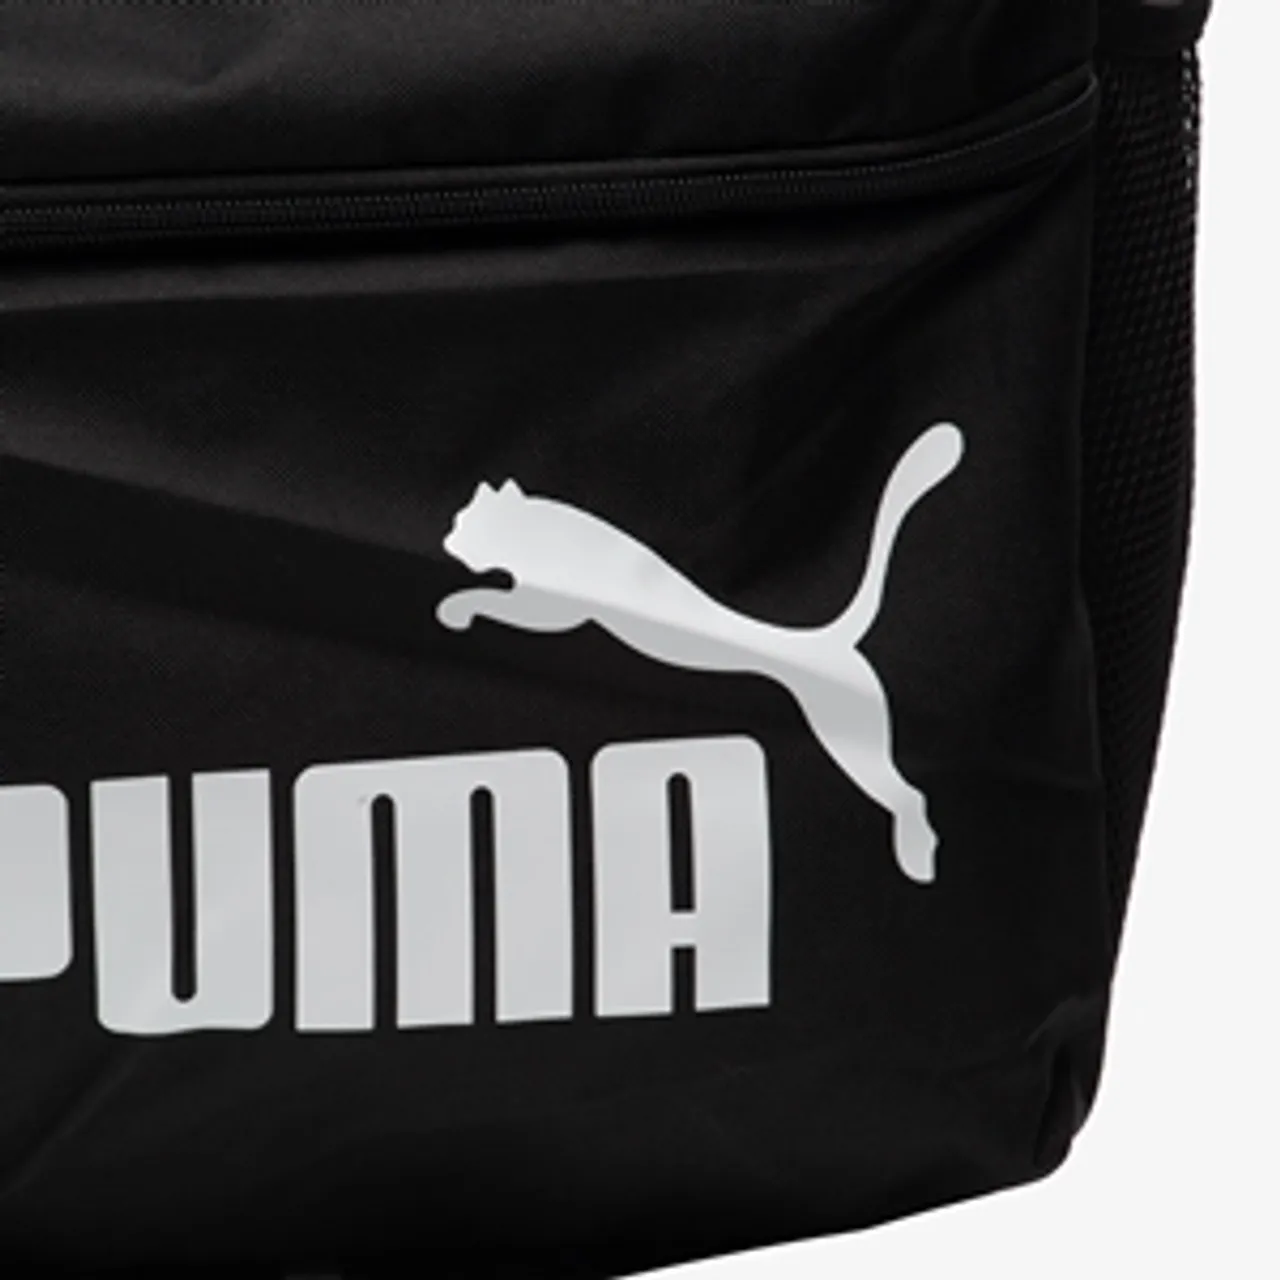 Puma Phase rugzak 22 Liter zwart